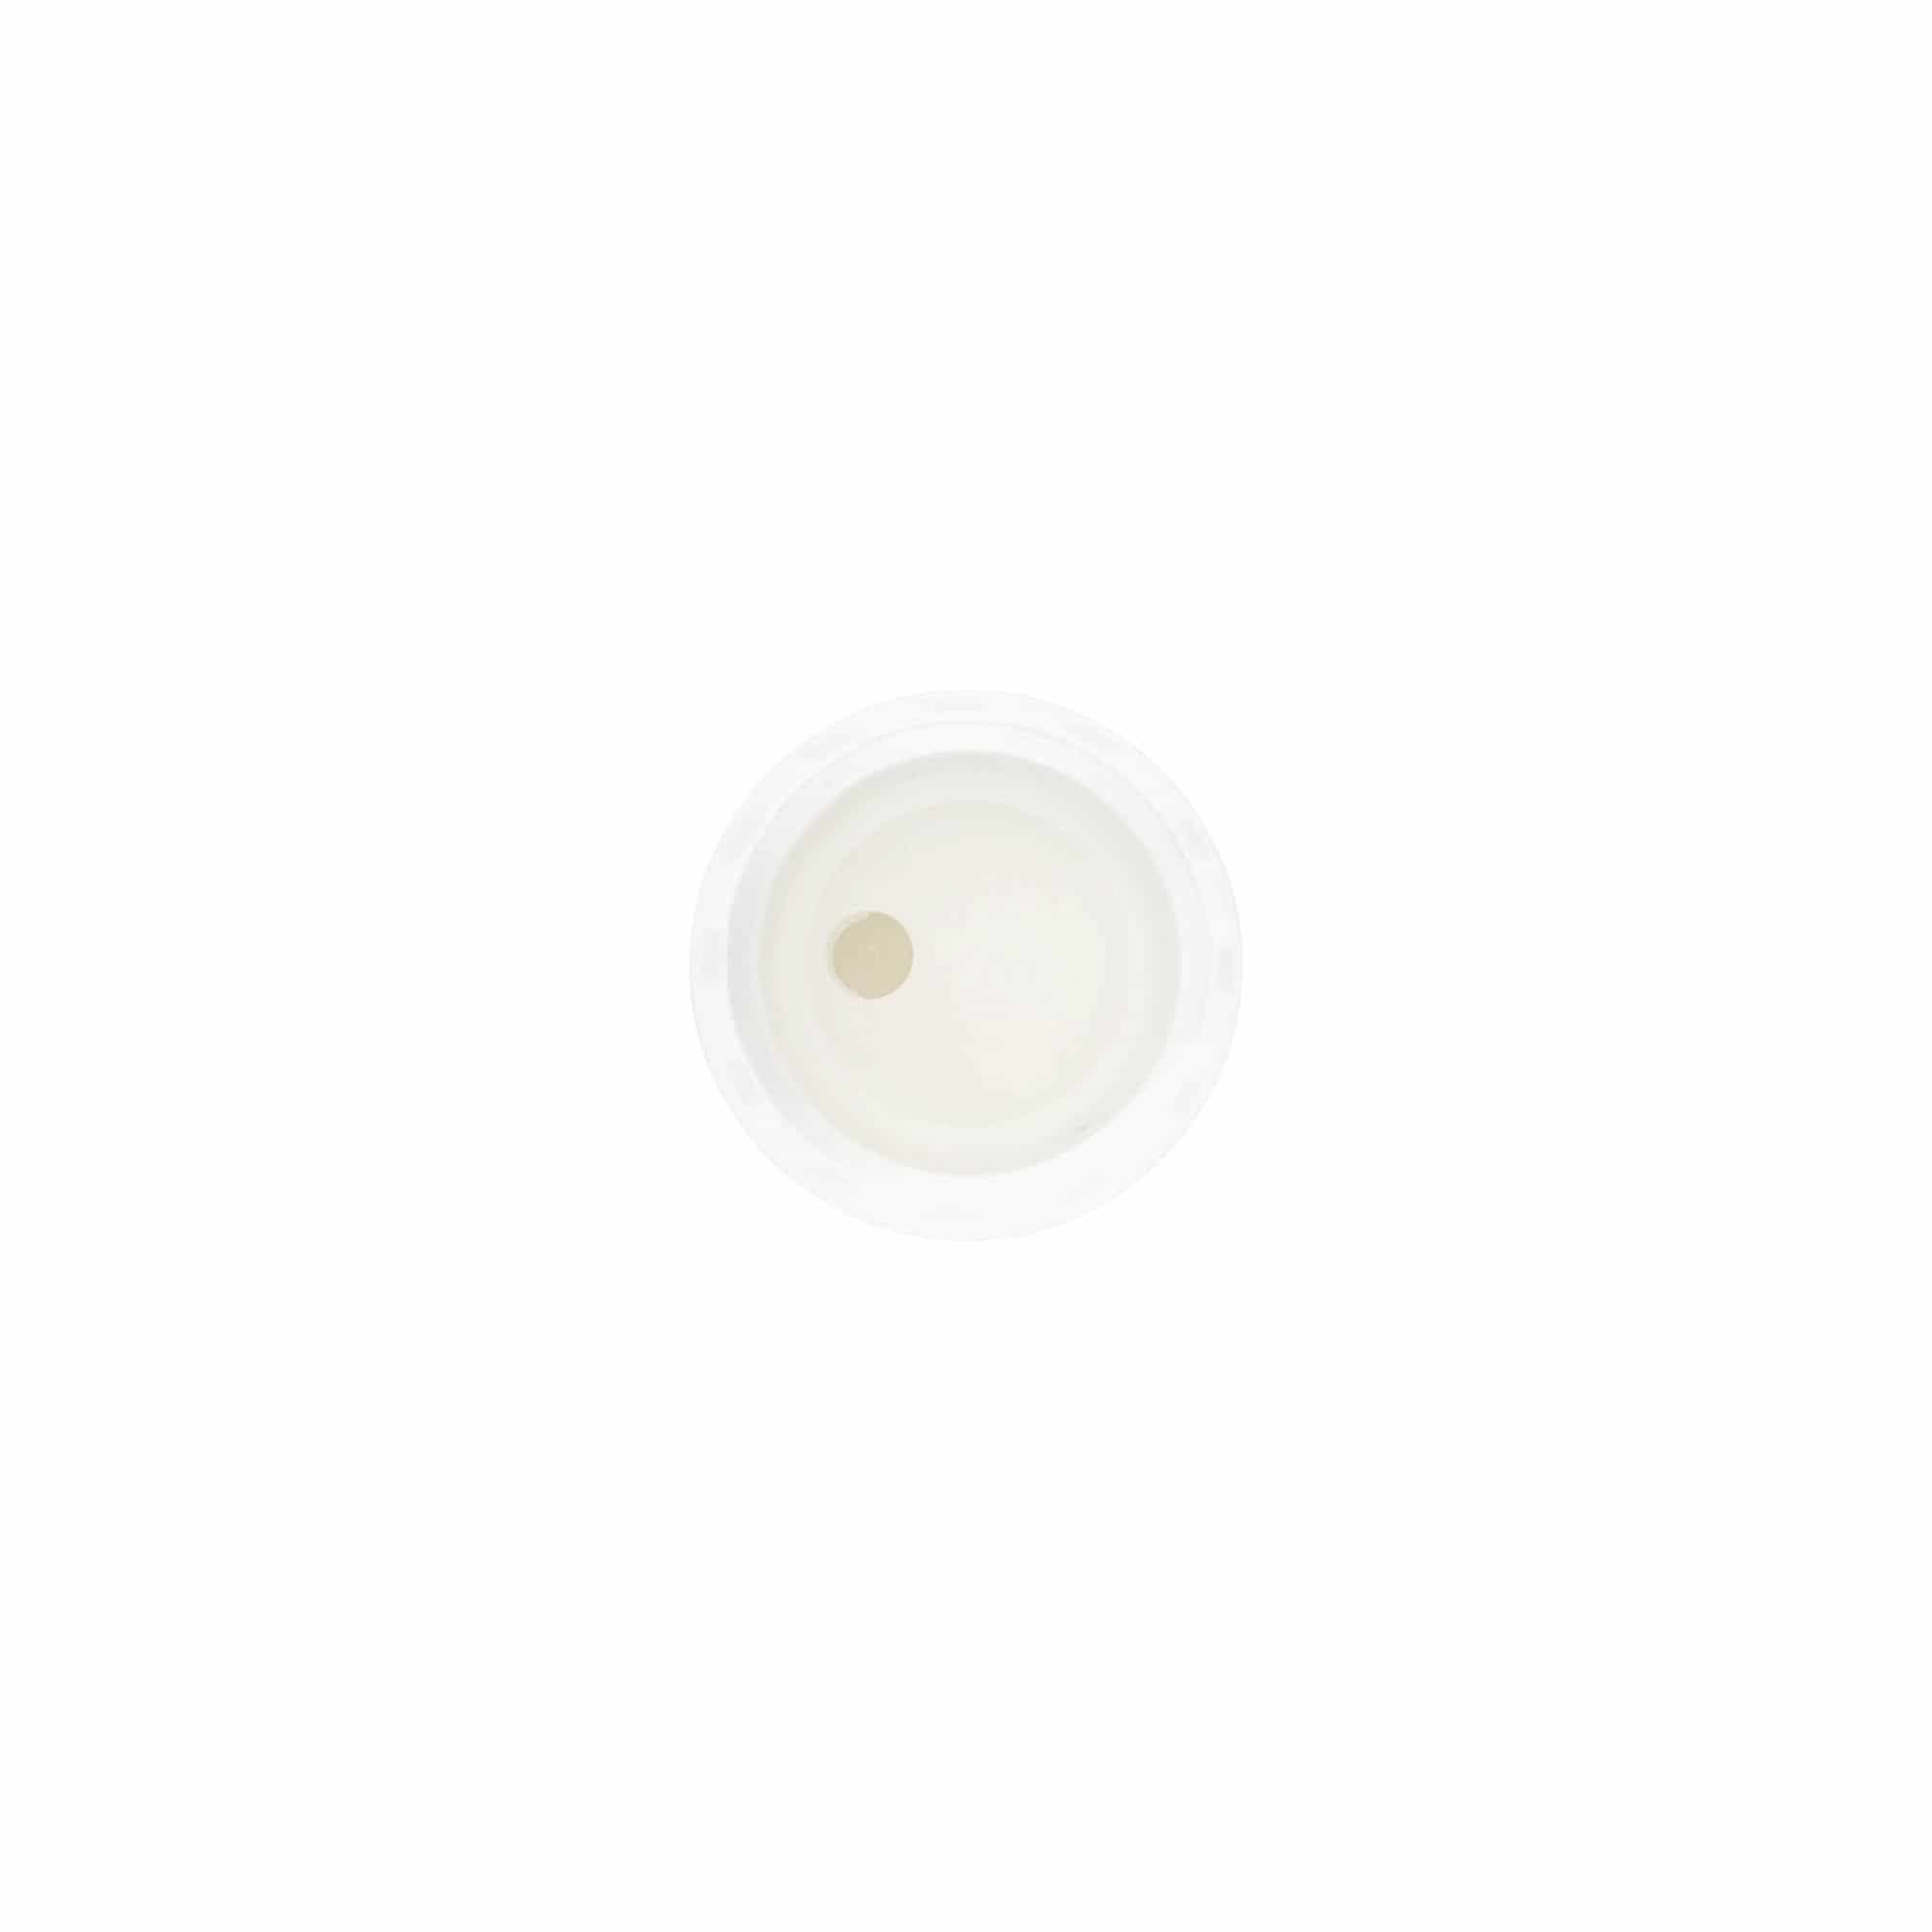 Šroubovací uzávěr Disc Top, plast PP, bílý, pro ústí: GPI 20/410